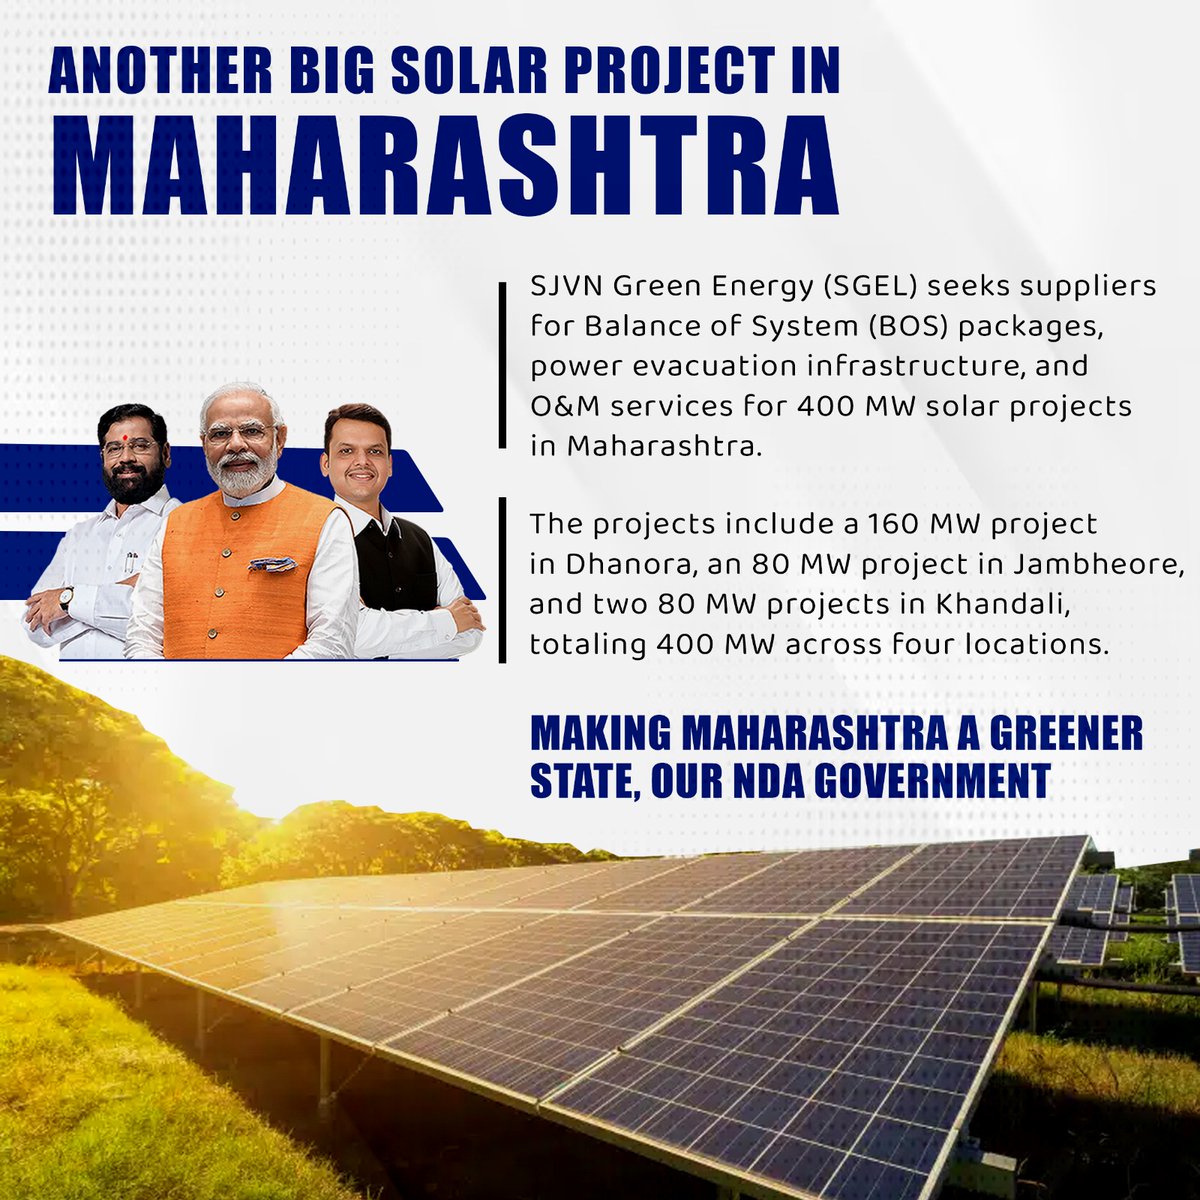 SJVN ग्रीन एनर्जी के 400 मेगावाट सौर उद्यम से महाराष्ट्र चमक उठा है! धनोरा से खंडाली तक, राज्य सतत ऊर्जा समाधानों को अपना रहा है। अक्षय ऊर्जा पहलों को आगे बढ़ाने के लिए सीएम एकनाथ शिंदे को धन्यवाद।